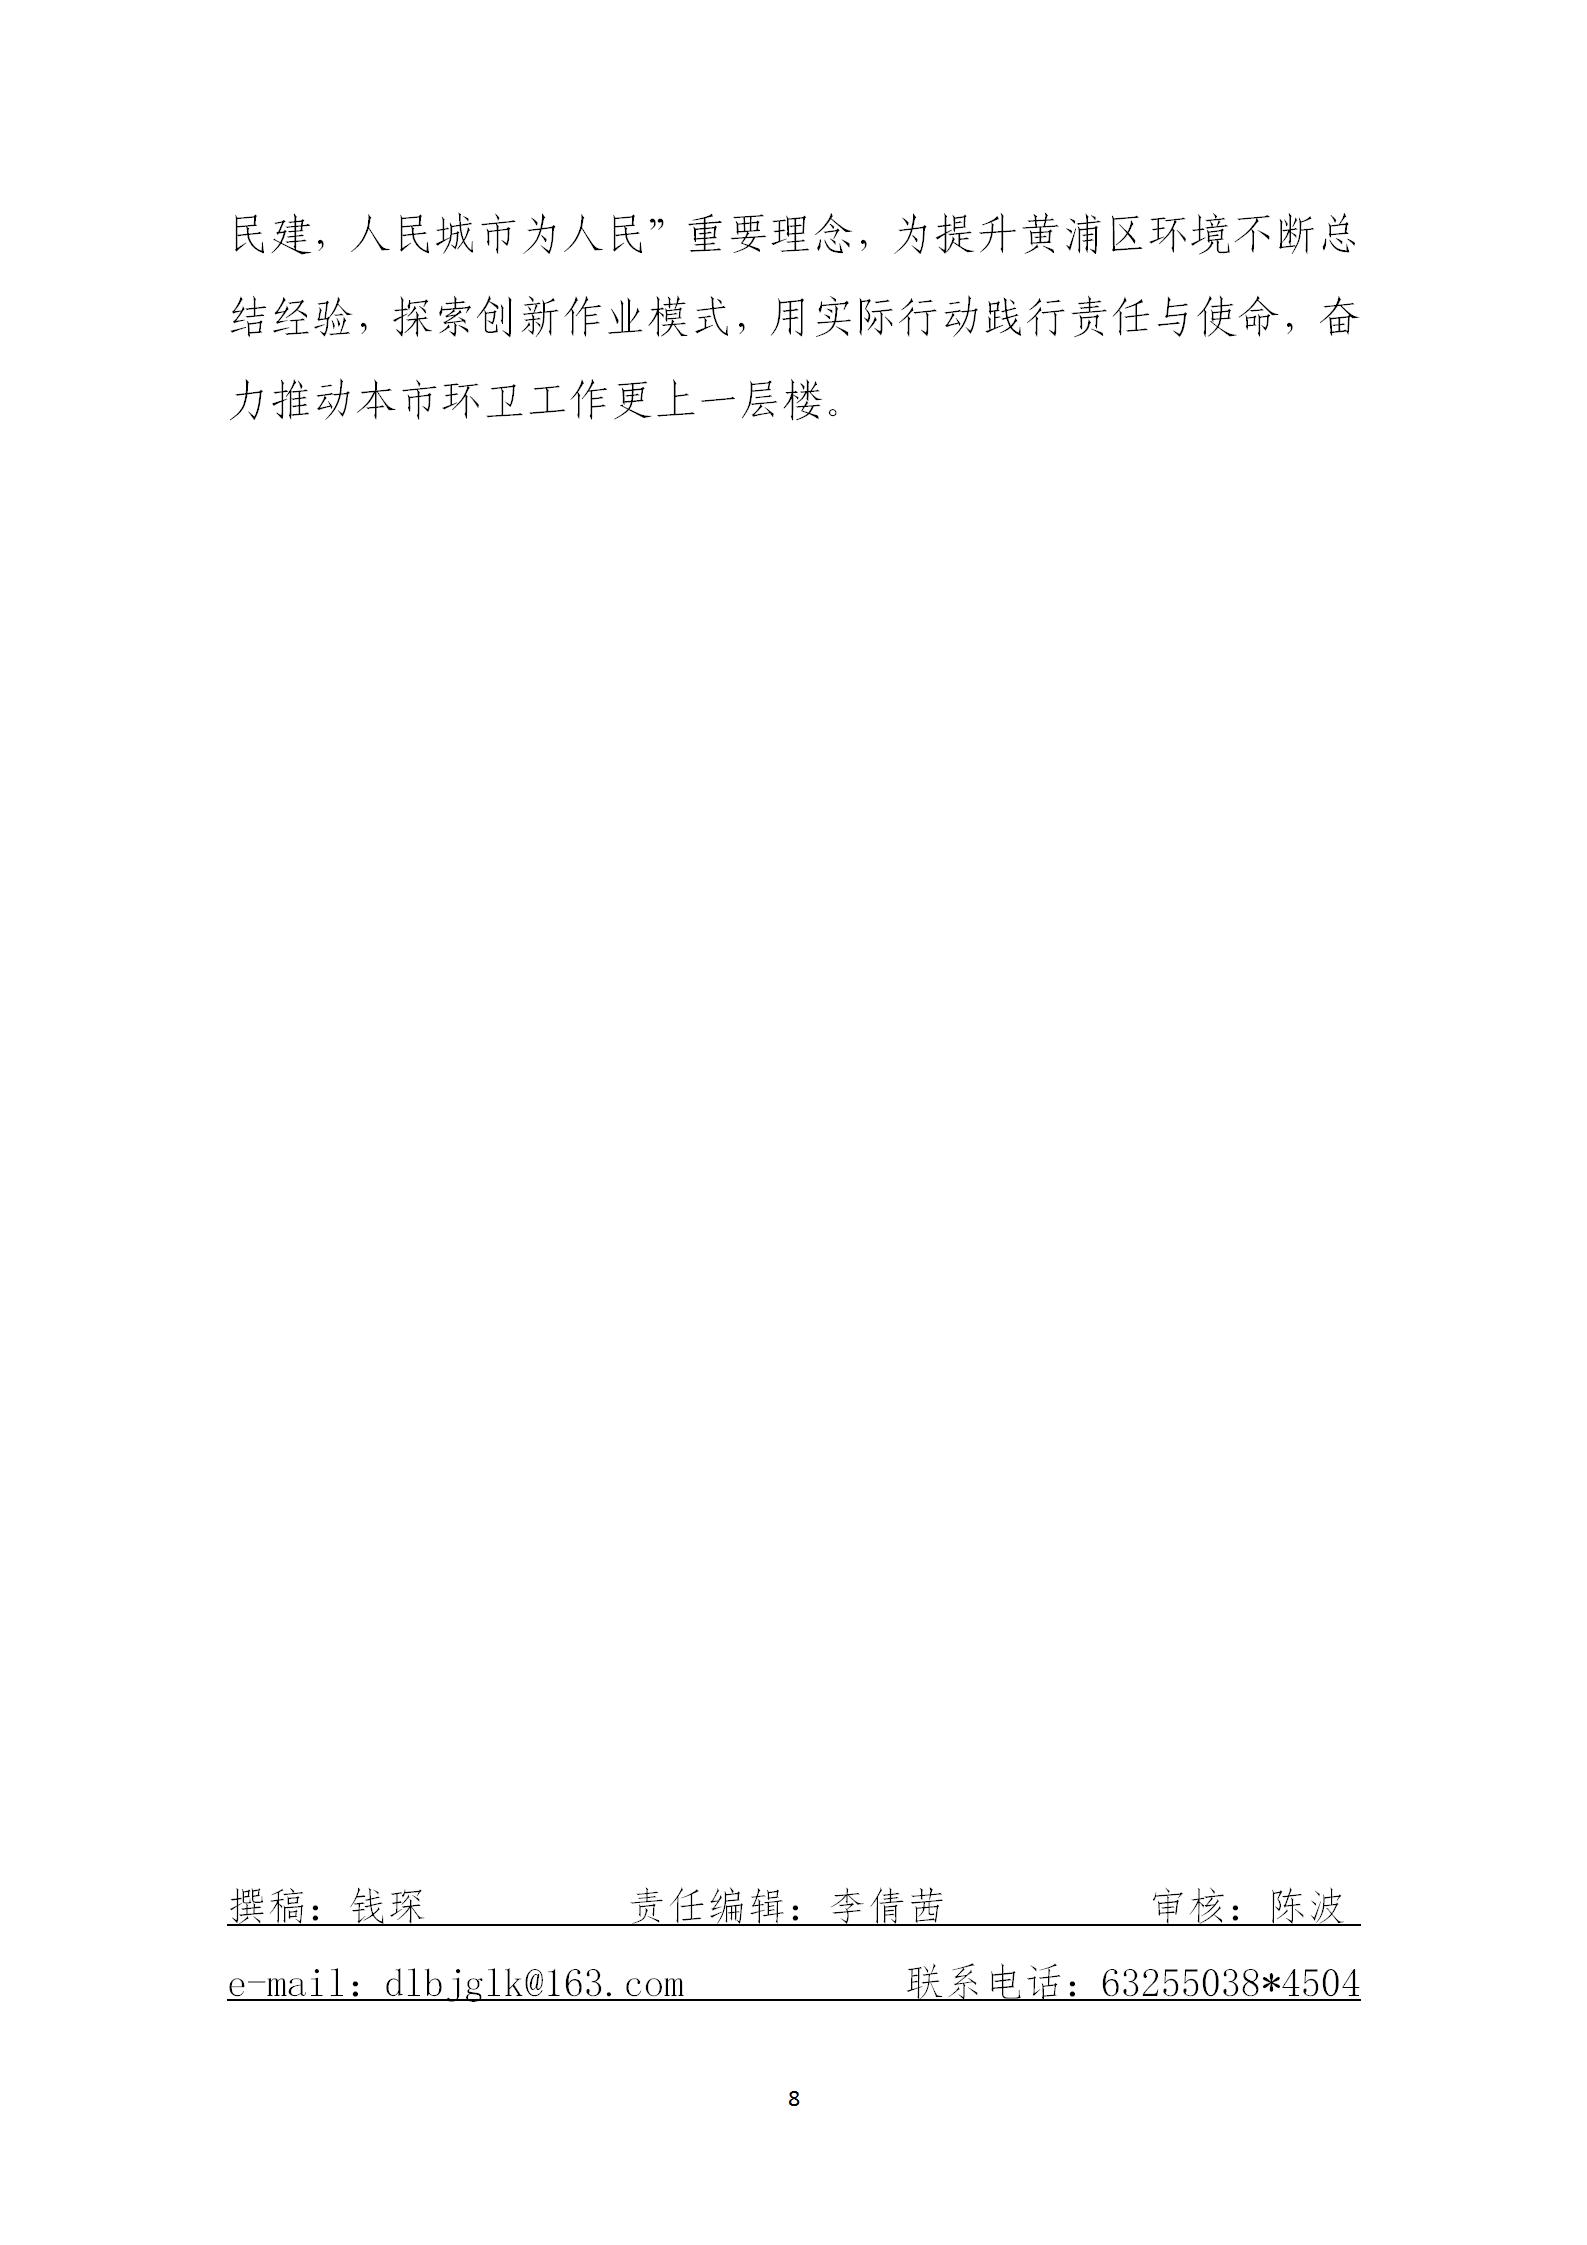 上海市道路保洁与垃圾清运工作月刊  2023年第3期(8)_08.jpg